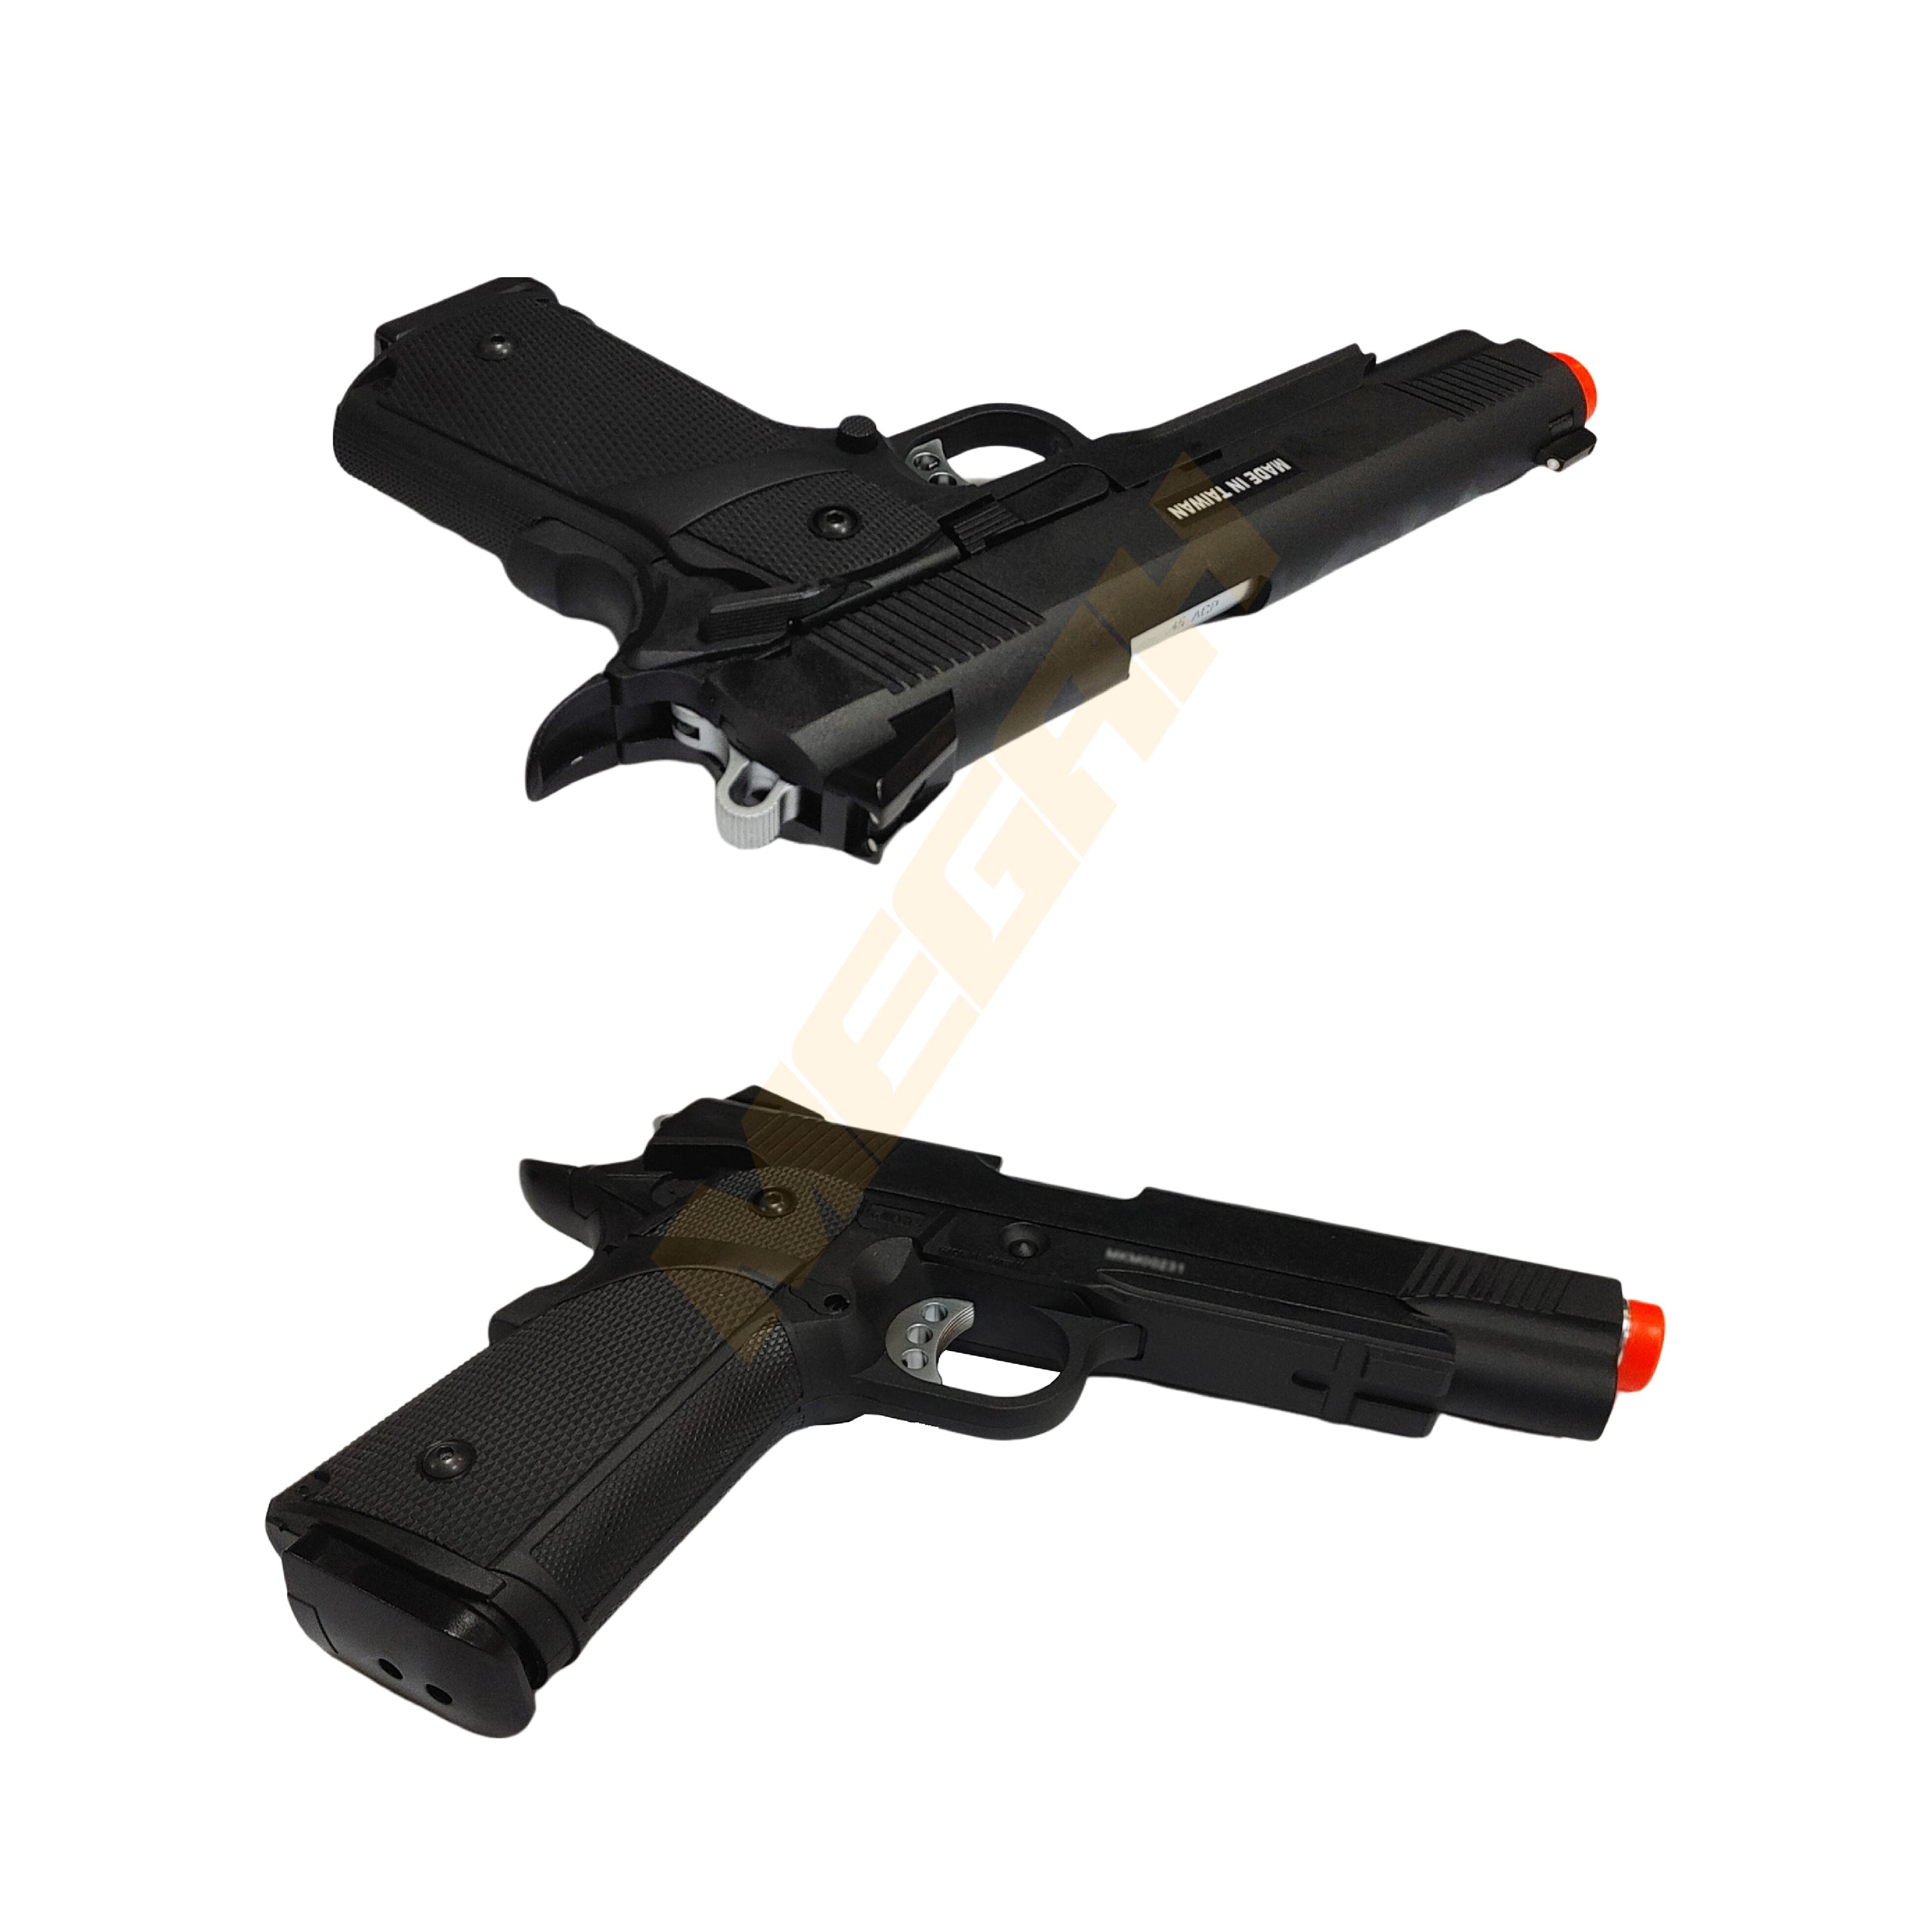 KJW HI-CAPA 5.1 BLACK - AIRSOFT GUN (SE692)